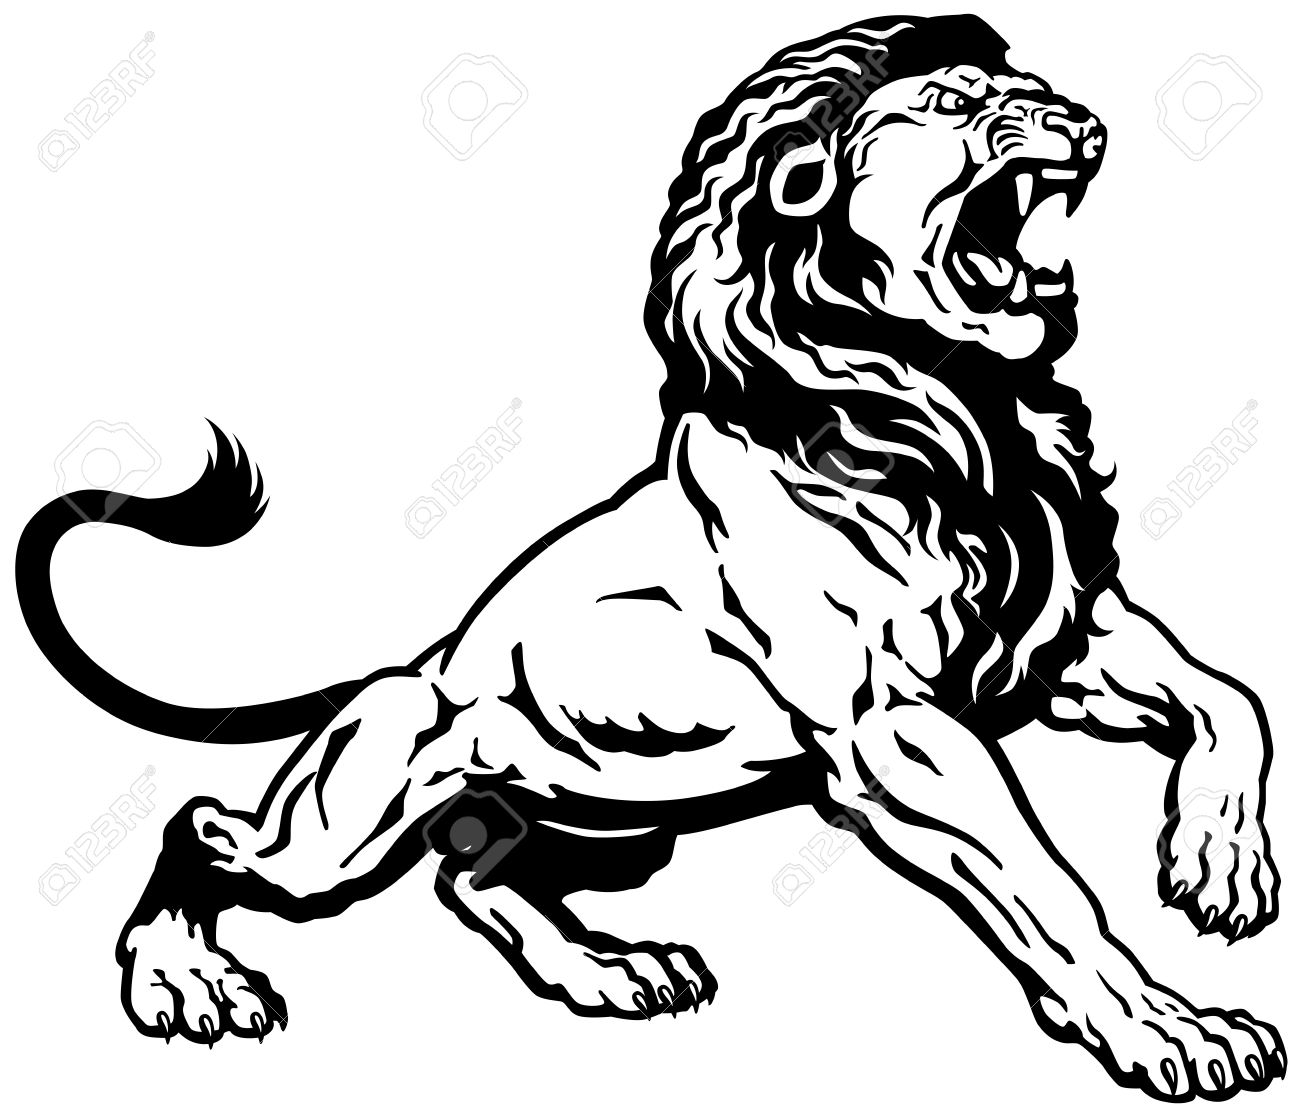 roaring lion - Roaring Lion Clipart